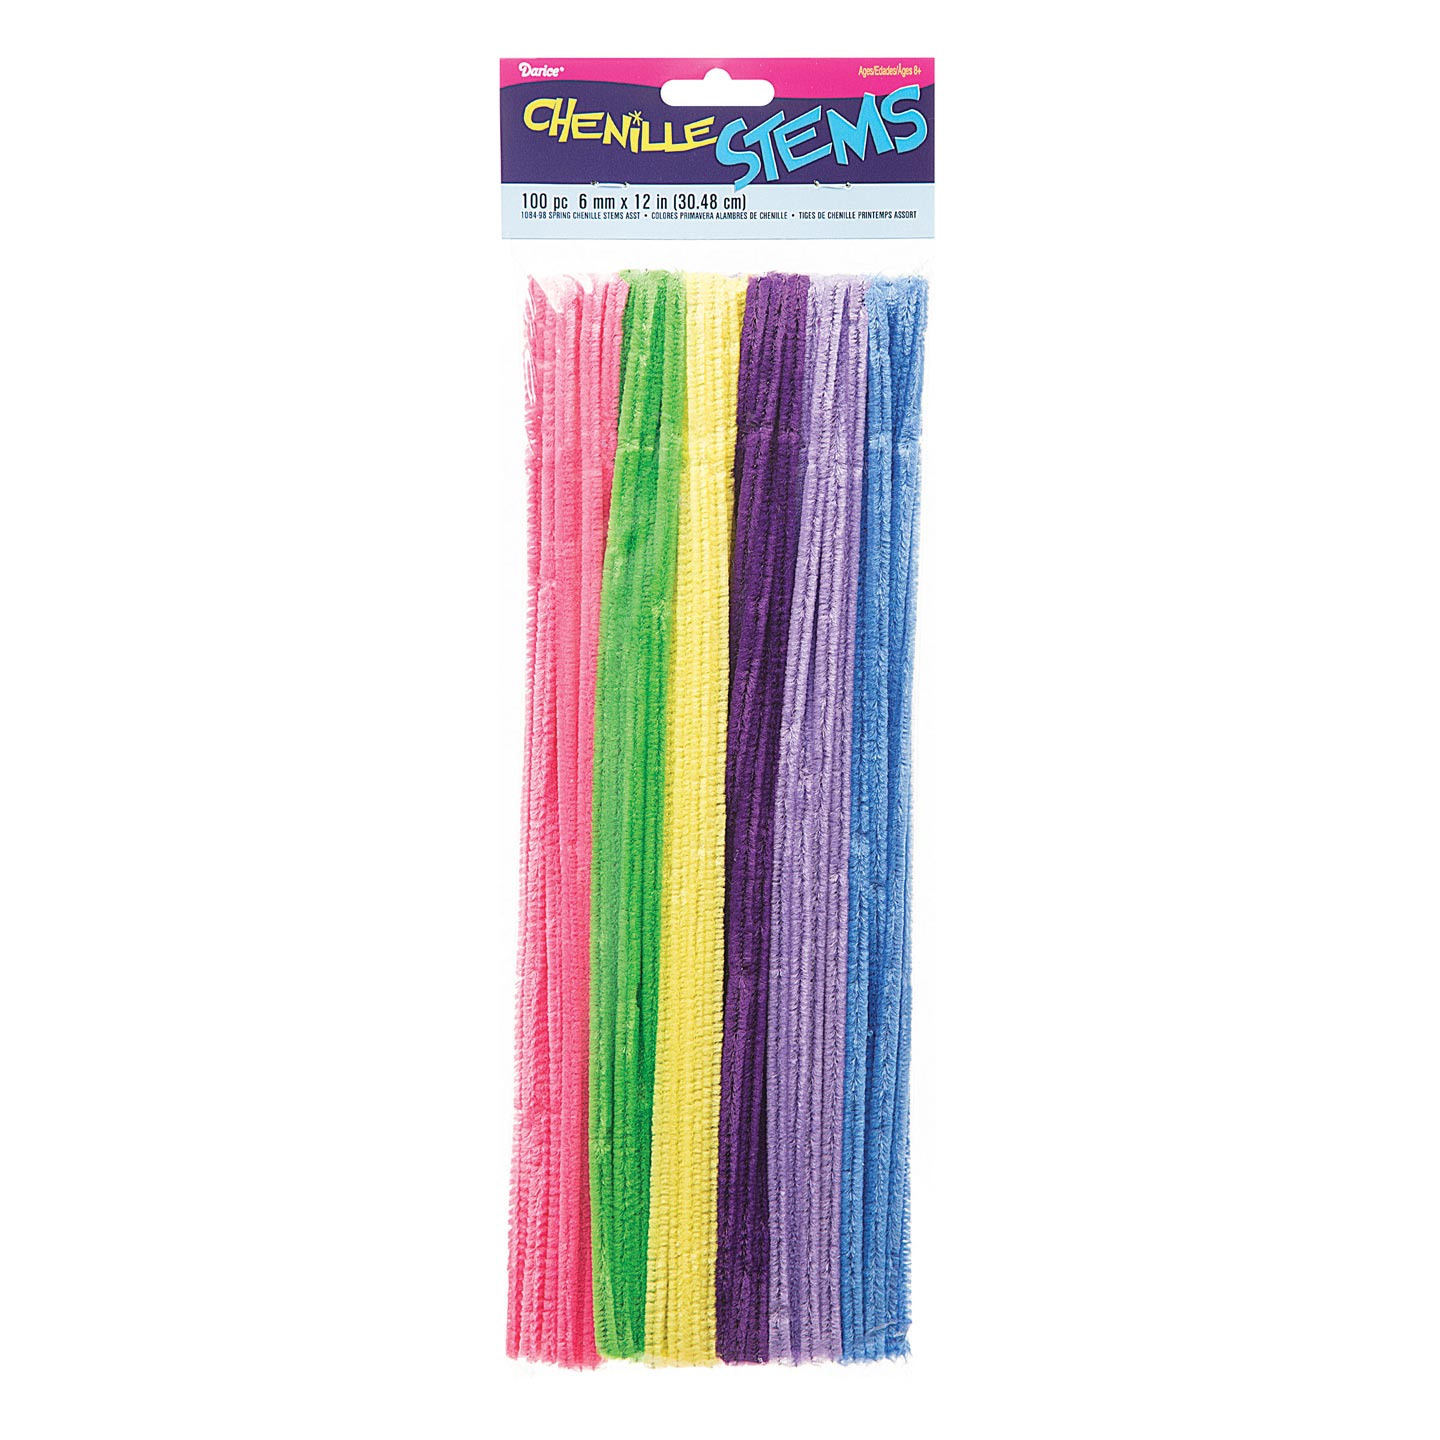 X10 pièce 9cm longue pipe cleaners chenille sticks fuzzy tige mixte couleur color 